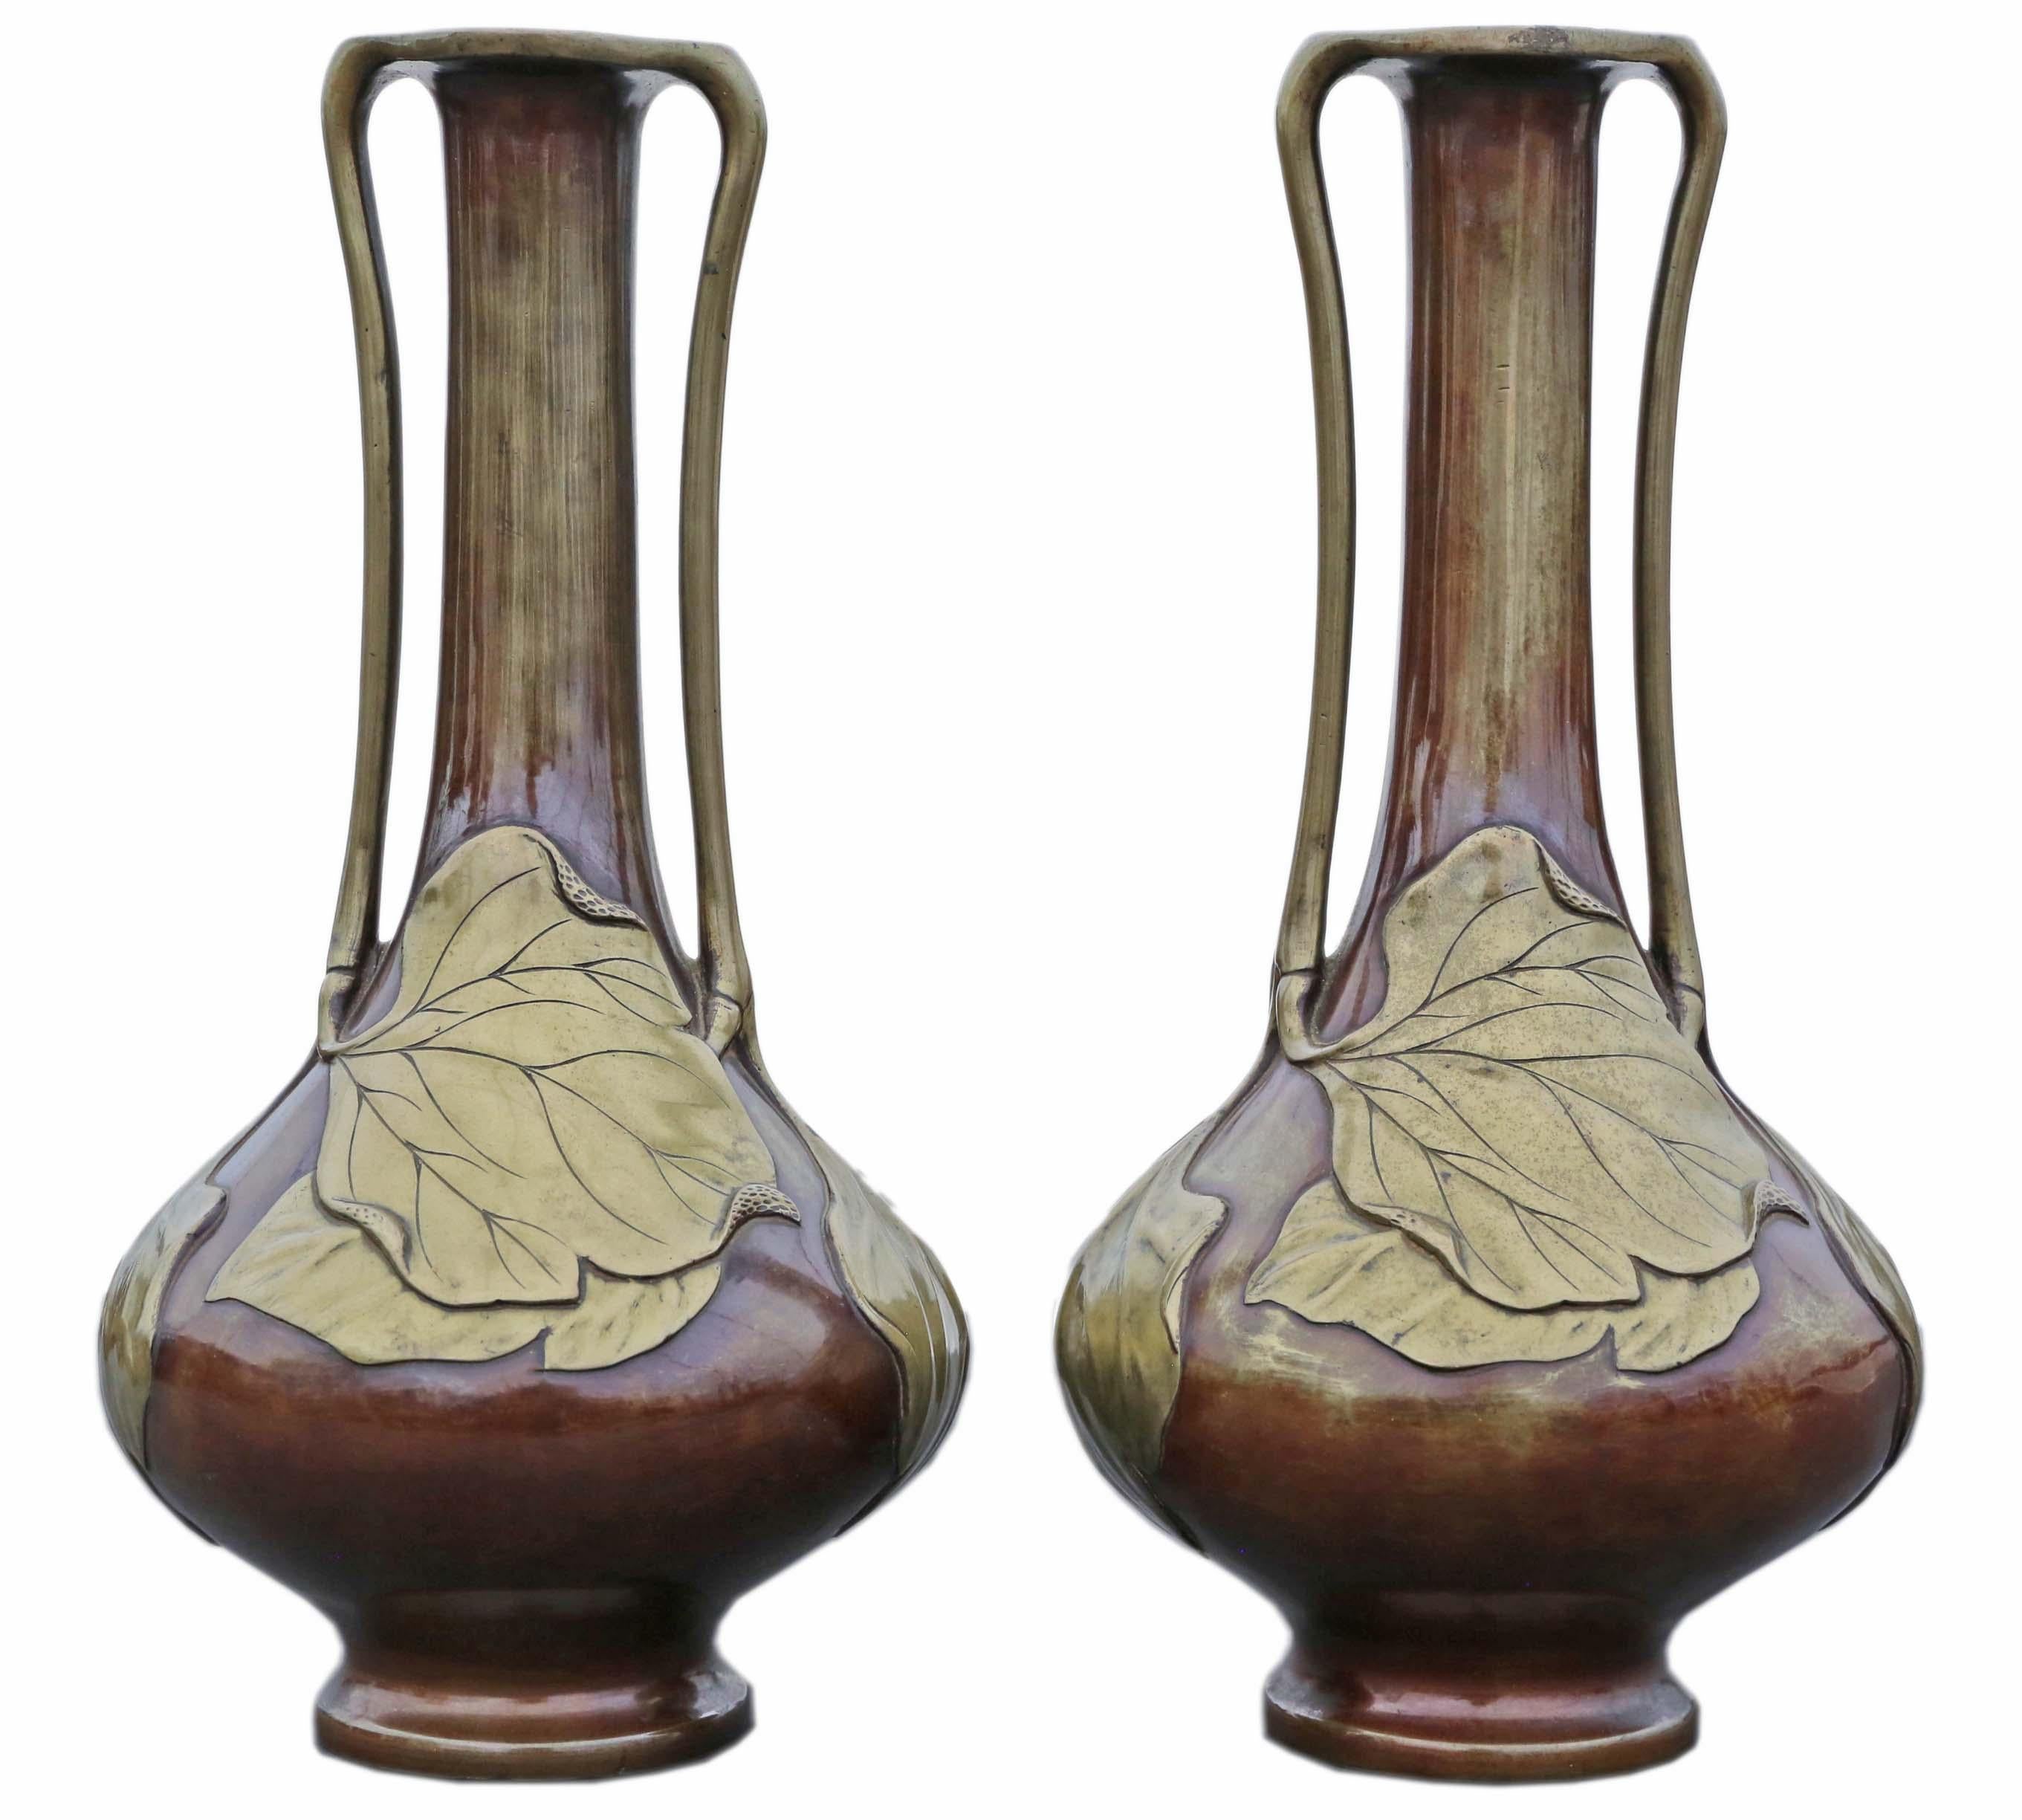 Antike große Paar japanische Bronze gemischte Metall Vasen - Exquisite Meiji Periode Künstler Stücke!

Diese atemberaubenden japanischen Bronzevasen aus gemischtem Metall aus der Meiji-Periode um 1910 sind außergewöhnliche Beispiele für